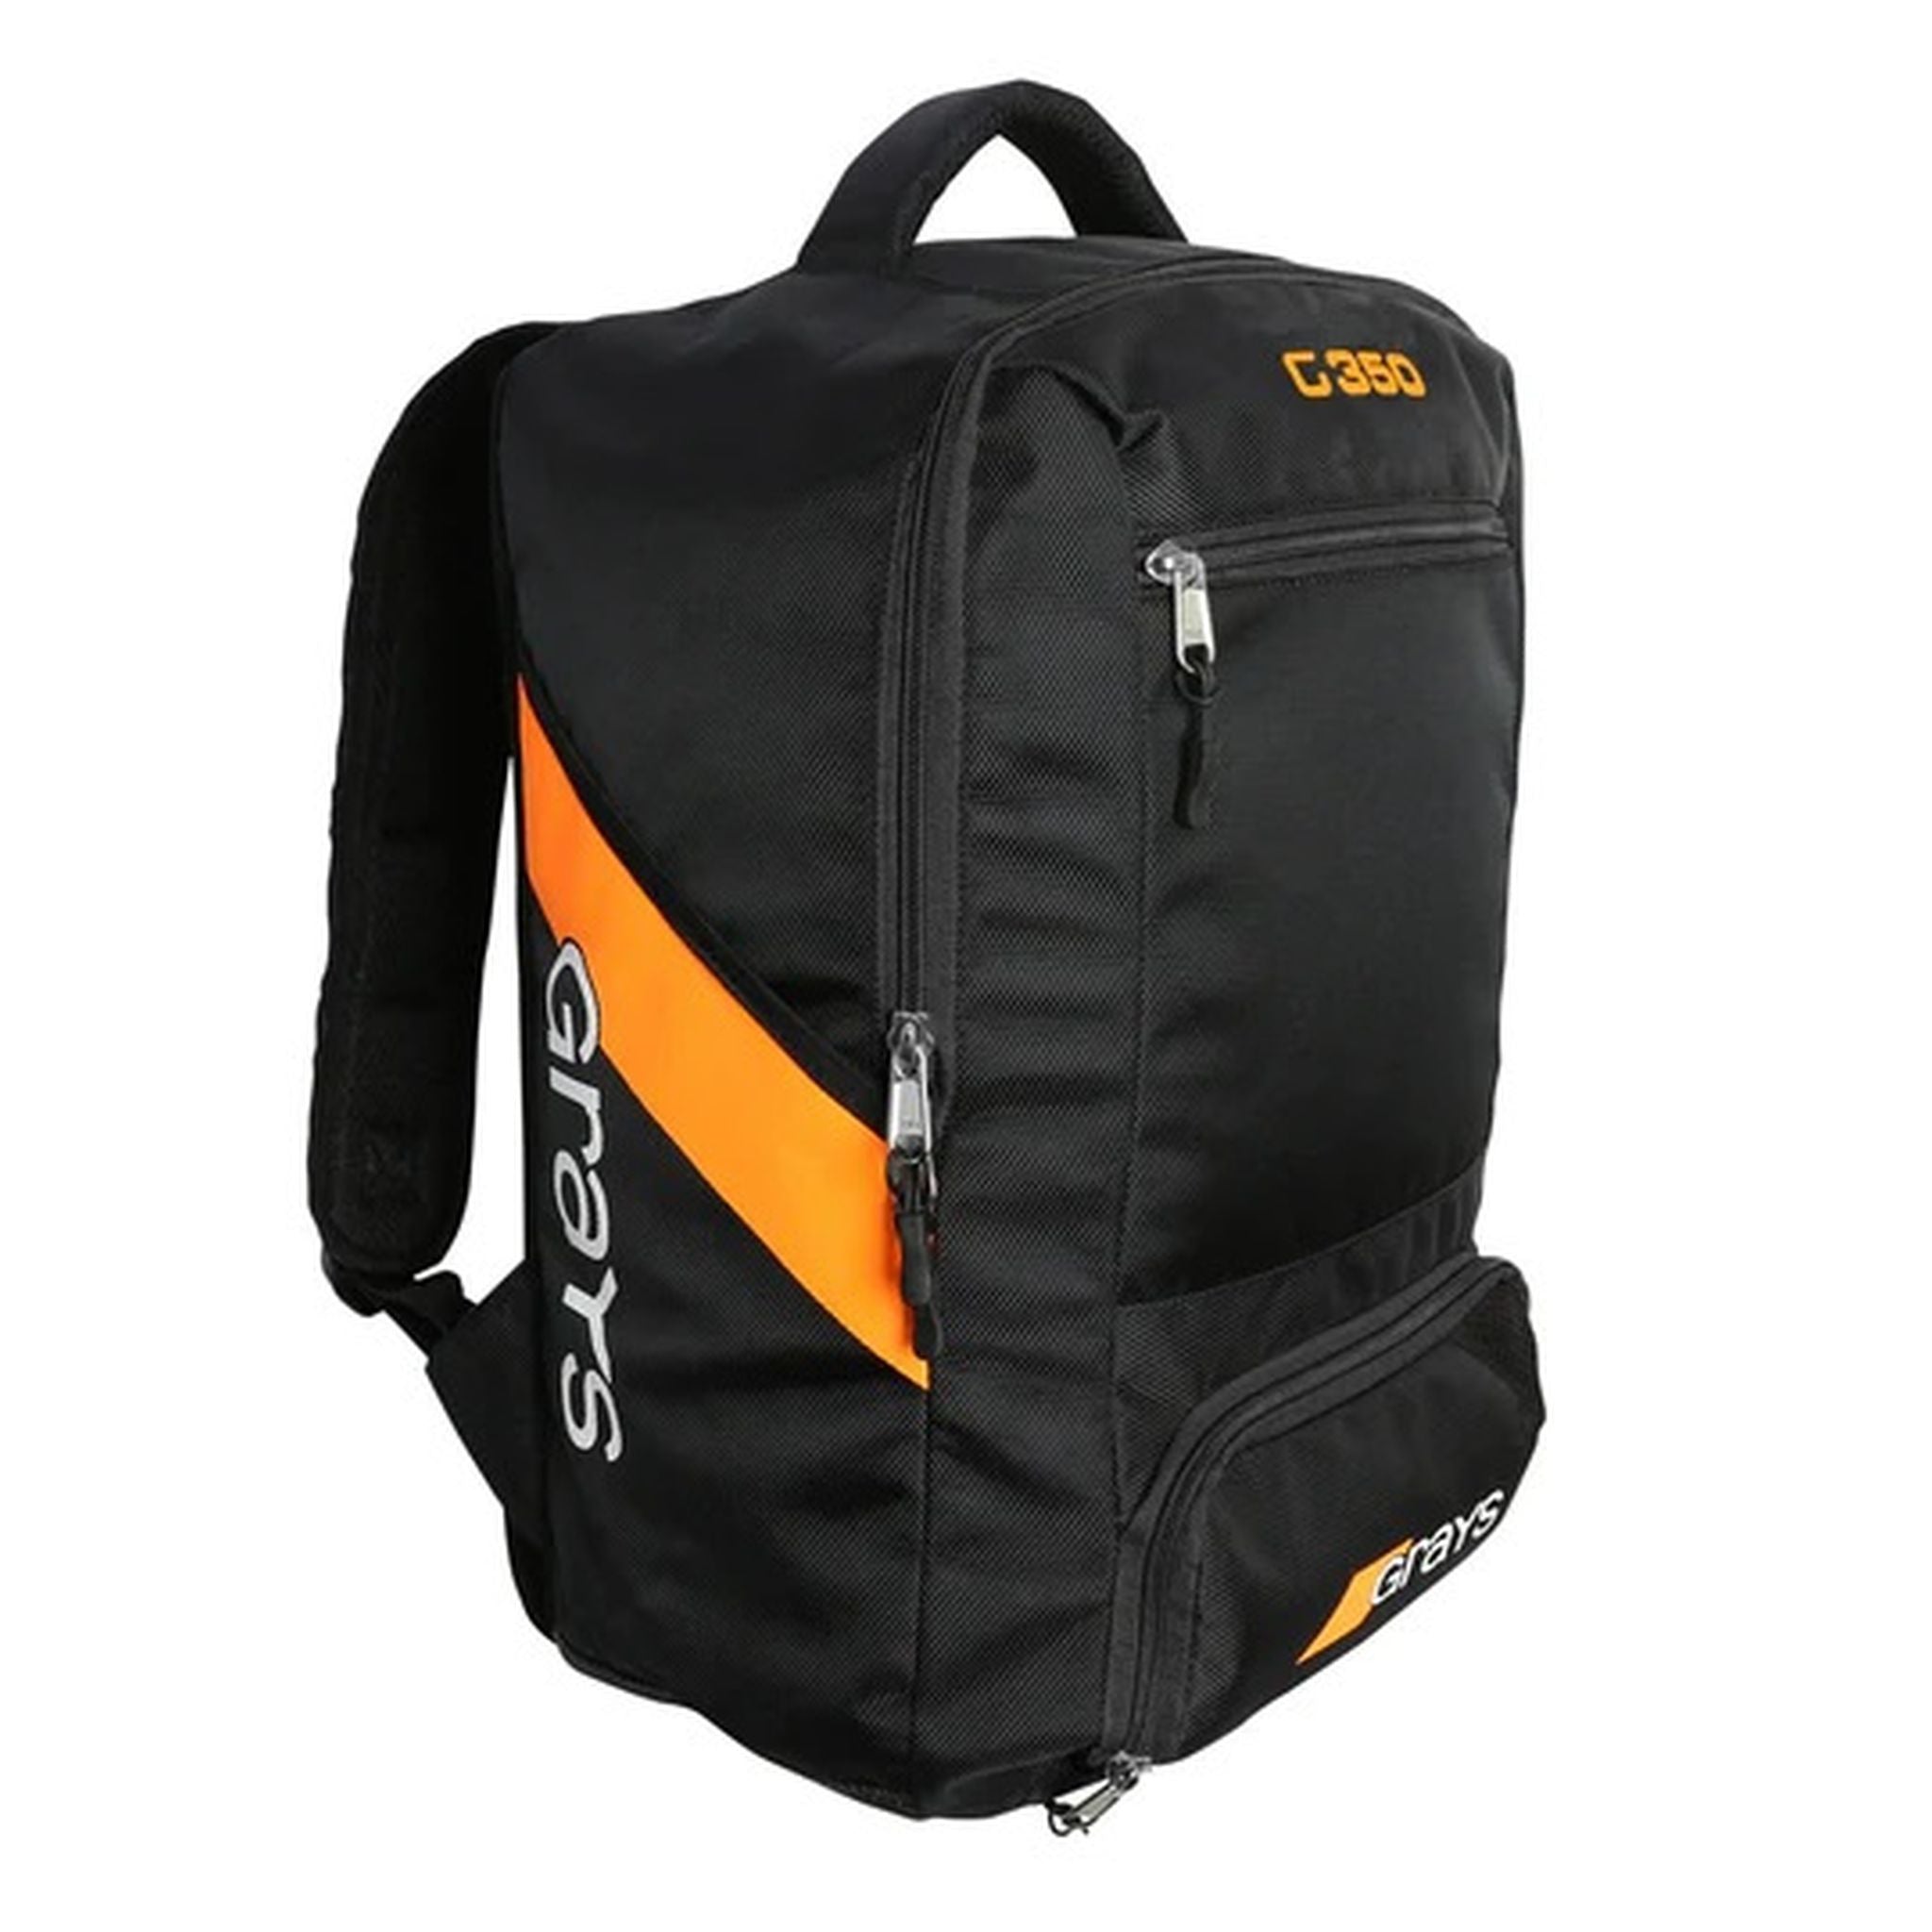 Grays G350 Hockey Backpack